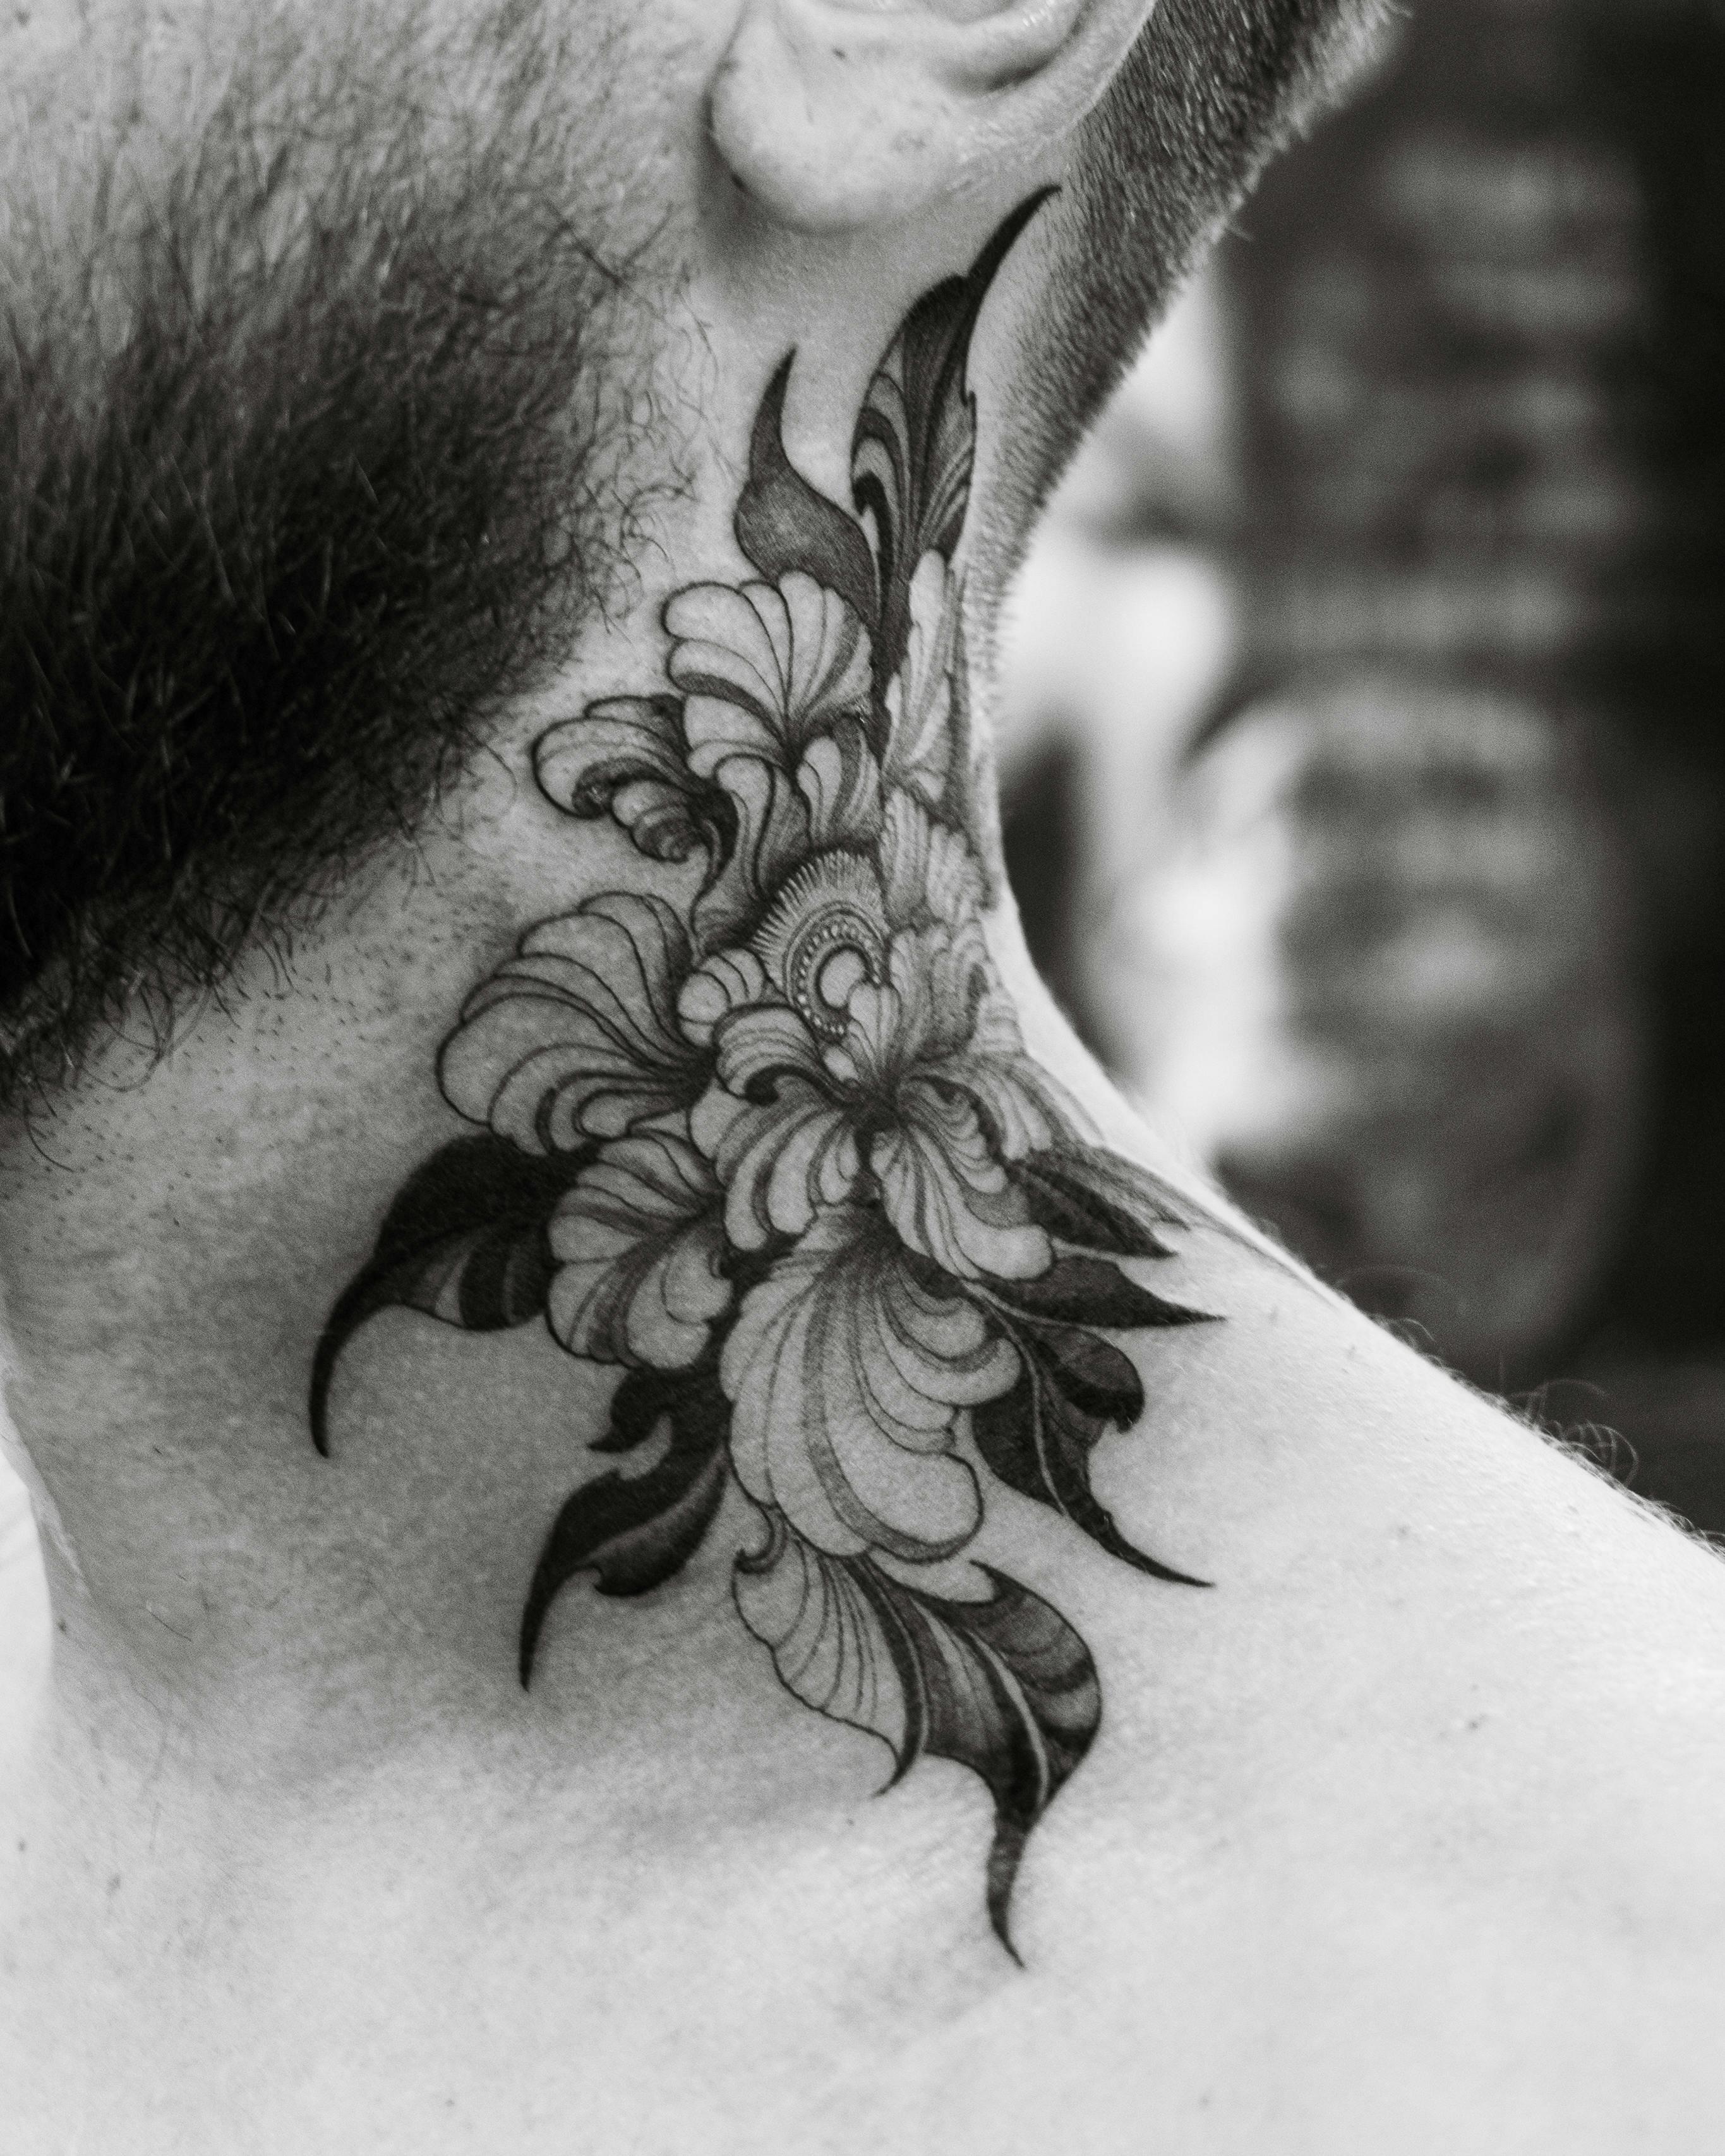 Random neck tattoos - Neck tattoos 2022 - Neck tattoos for men - YouTube